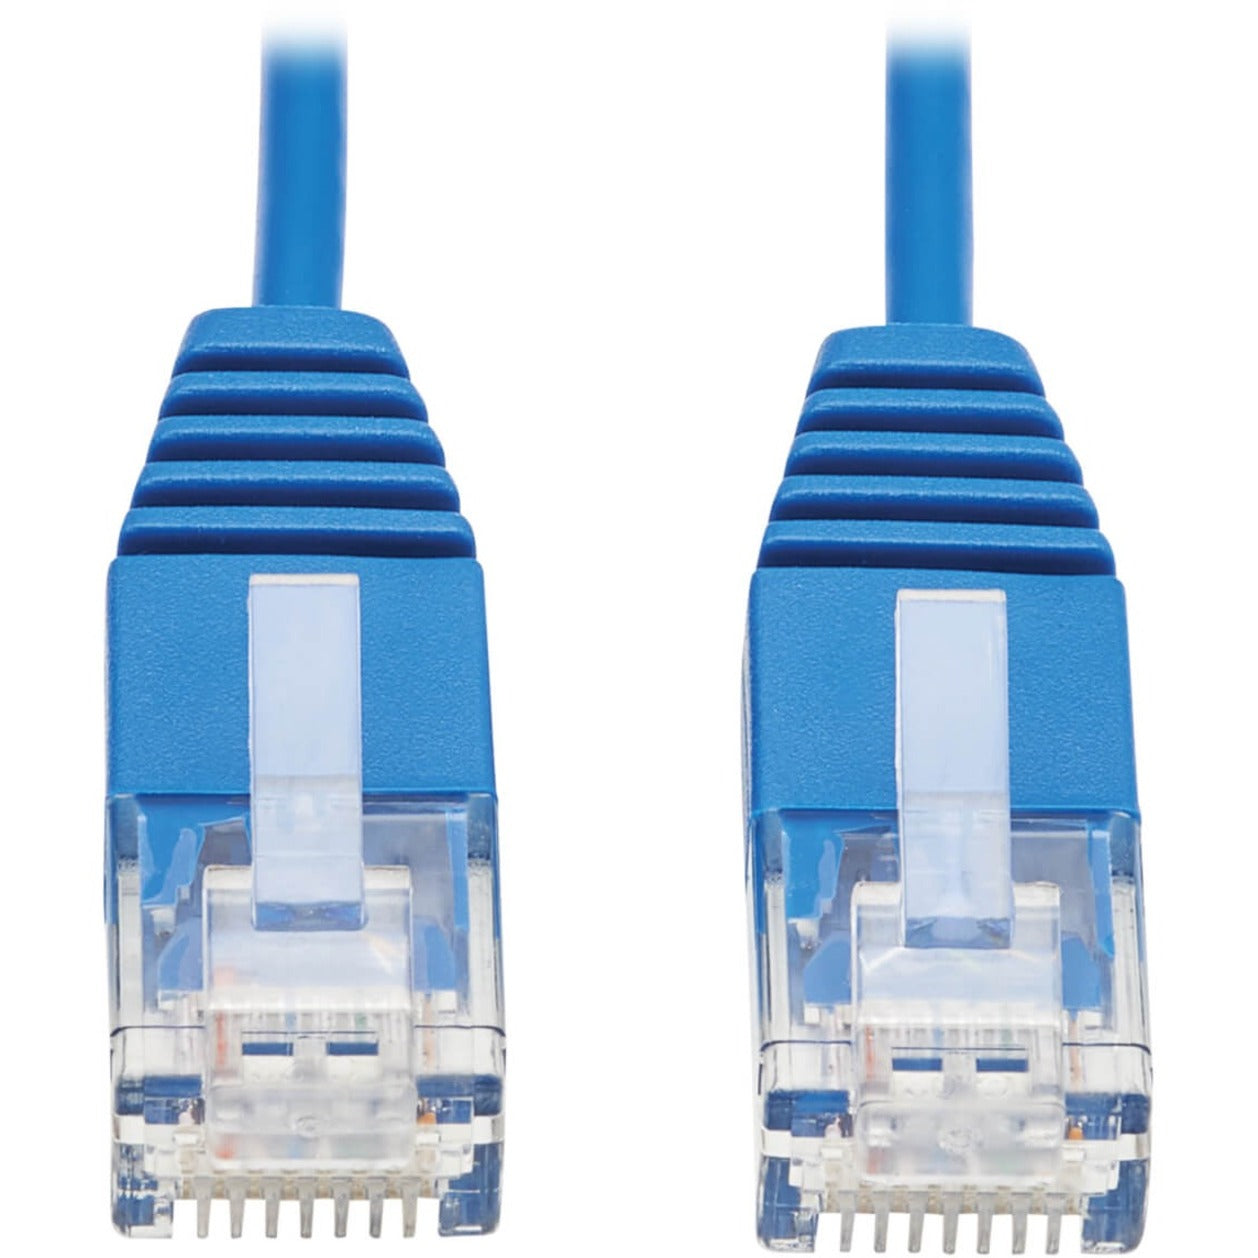 Tripp Lite N200-UR01-BL Cat6 Ultra-Slim Ethernet Cable, Blue, 1 ft.